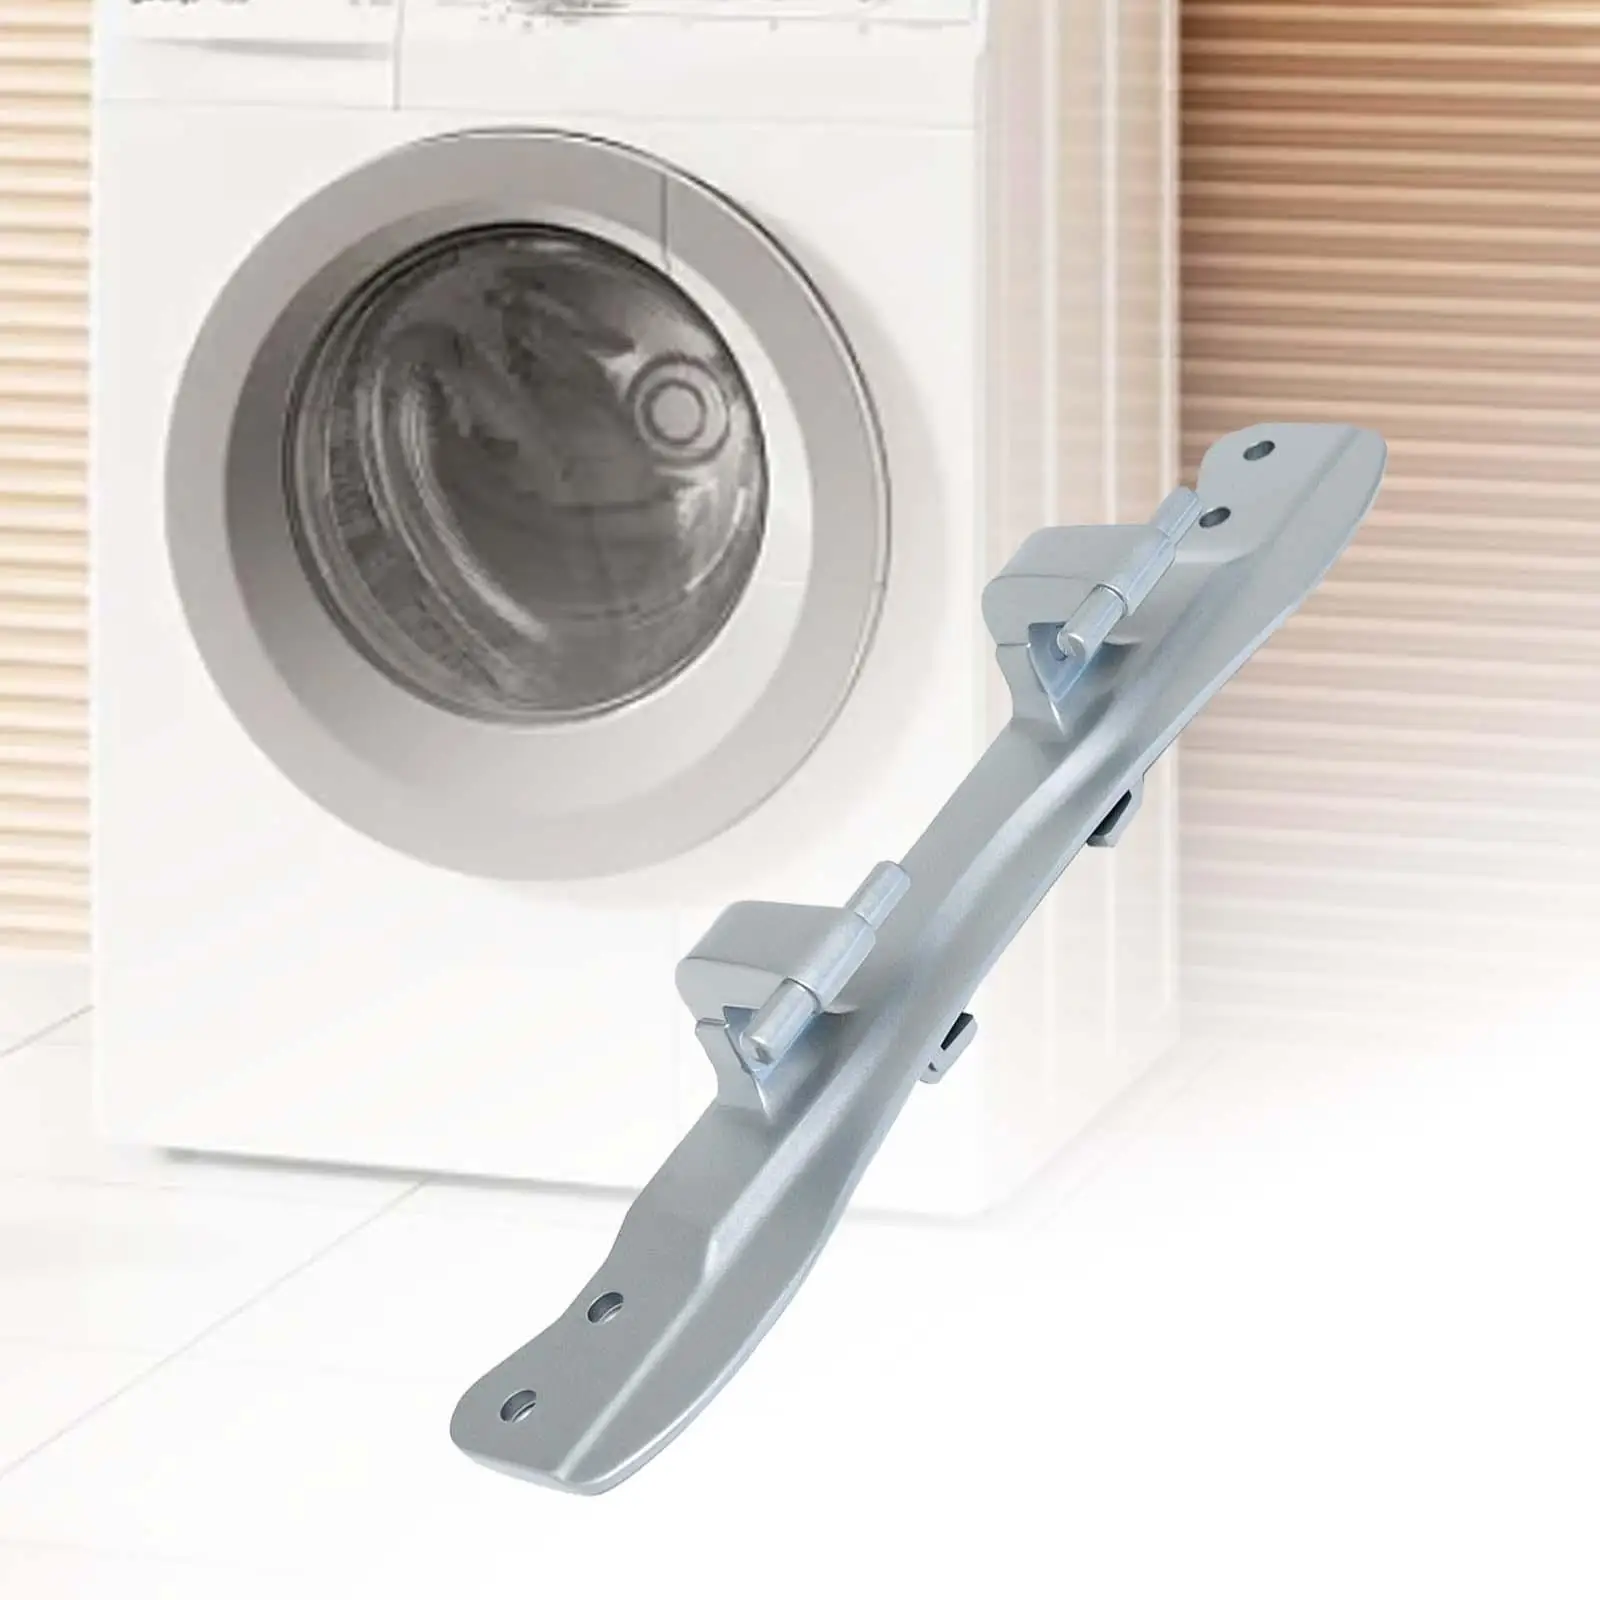 Washing Machine Door Hinge Washer Door Hinge Replacement Part for W10208415 Wpw10208415